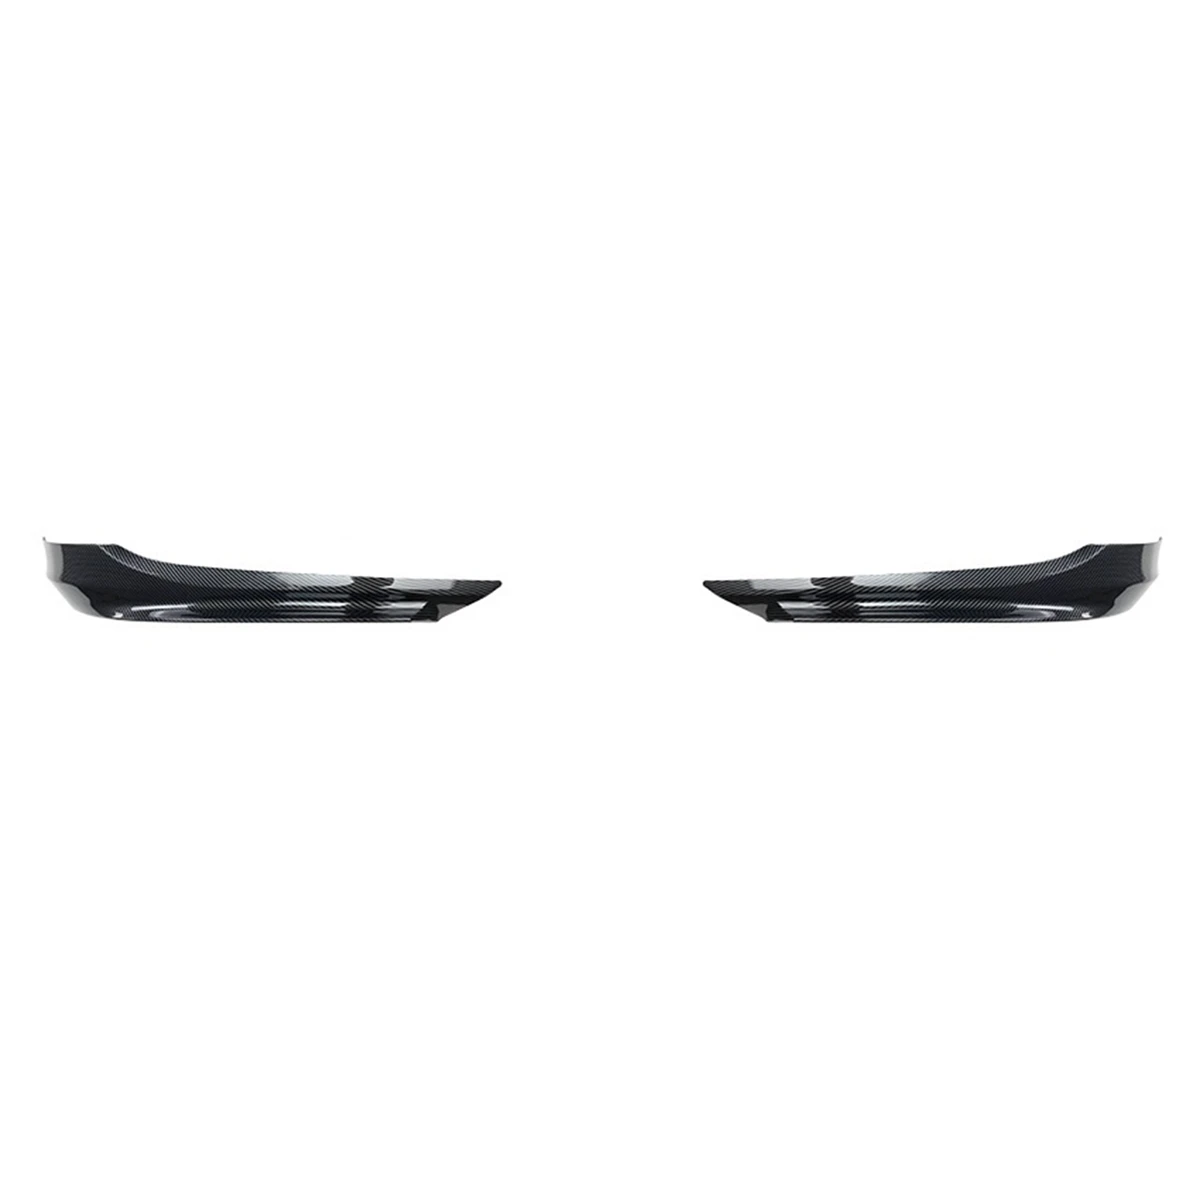 

For BMW 3-Series E90 E91 LCI 320I 330I 2009-2012 Carbon Fiber Front Bumper Lip Angle Diffuser Splitter Spoiler Protector